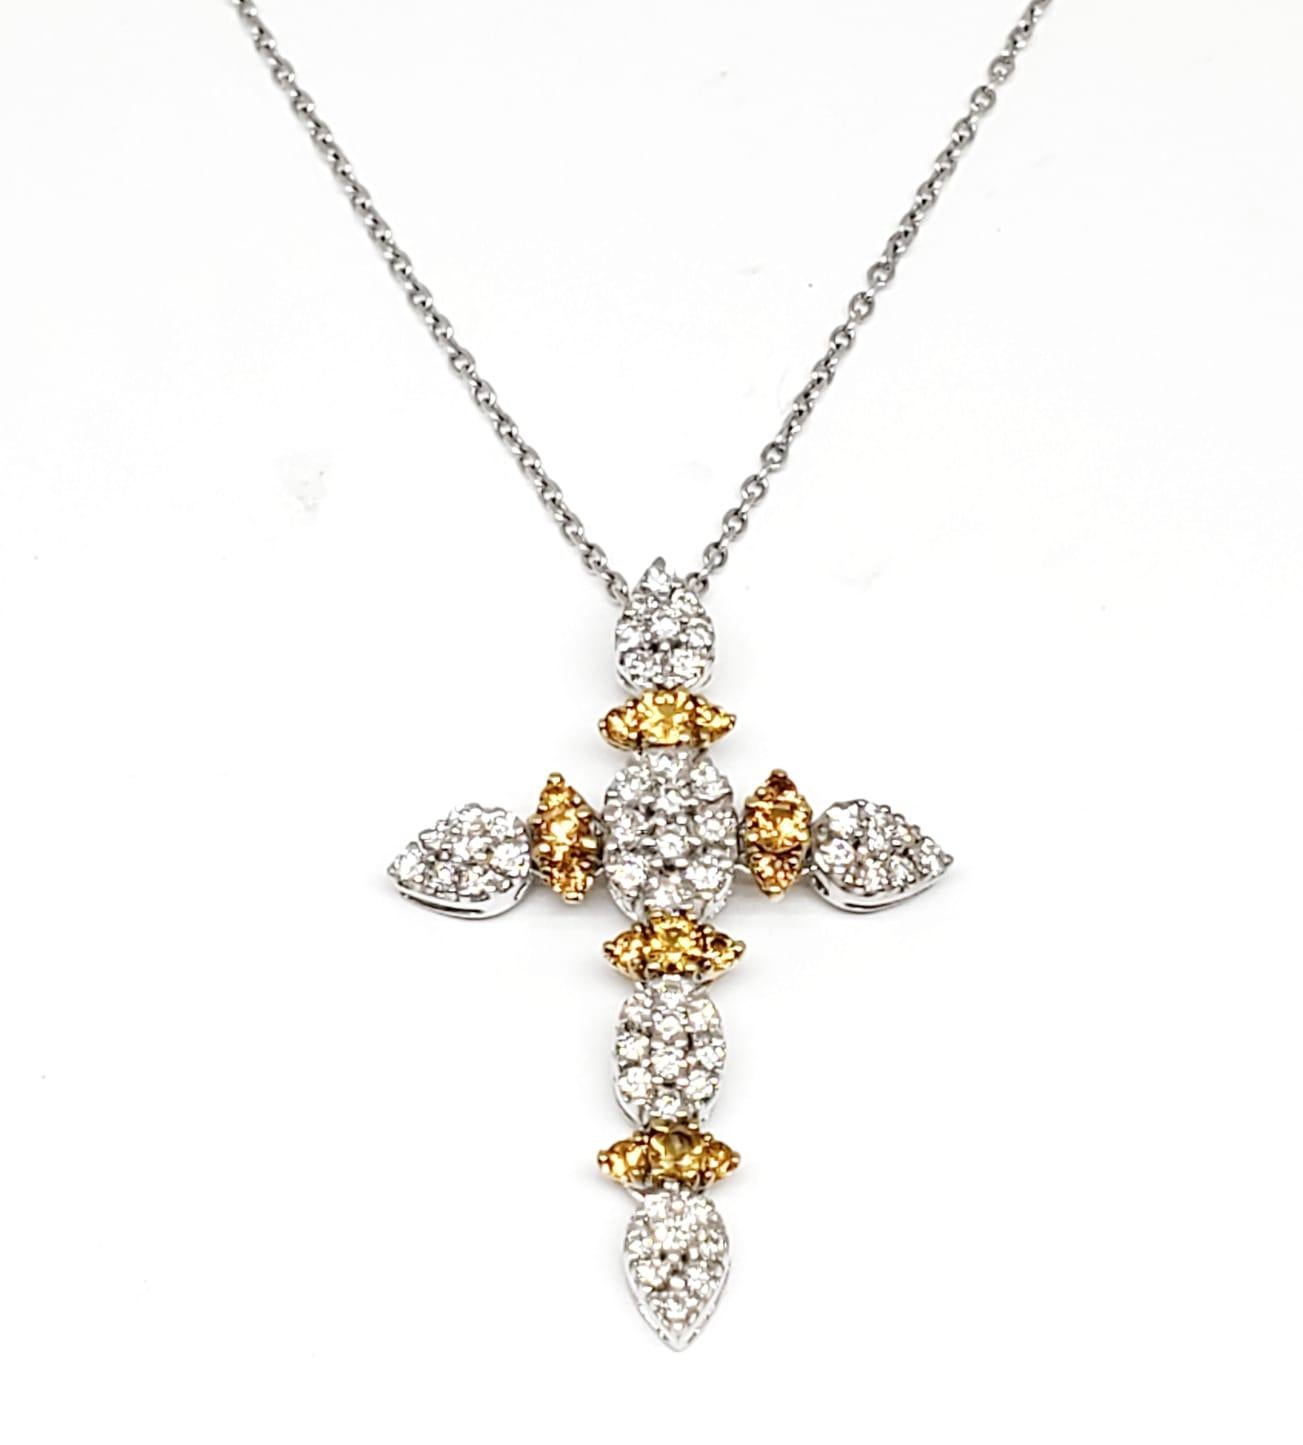 Andreoli Kreuz-Halskette aus 18 Karat Gold mit Diamanten und Saphiren

Diese Halskette hat folgende Merkmale:
- 1,60 Karat Diamant
- 1,27 Karat Saphir
- 10,65g 18k zweifarbiges Gold
- Hergestellt in Italien